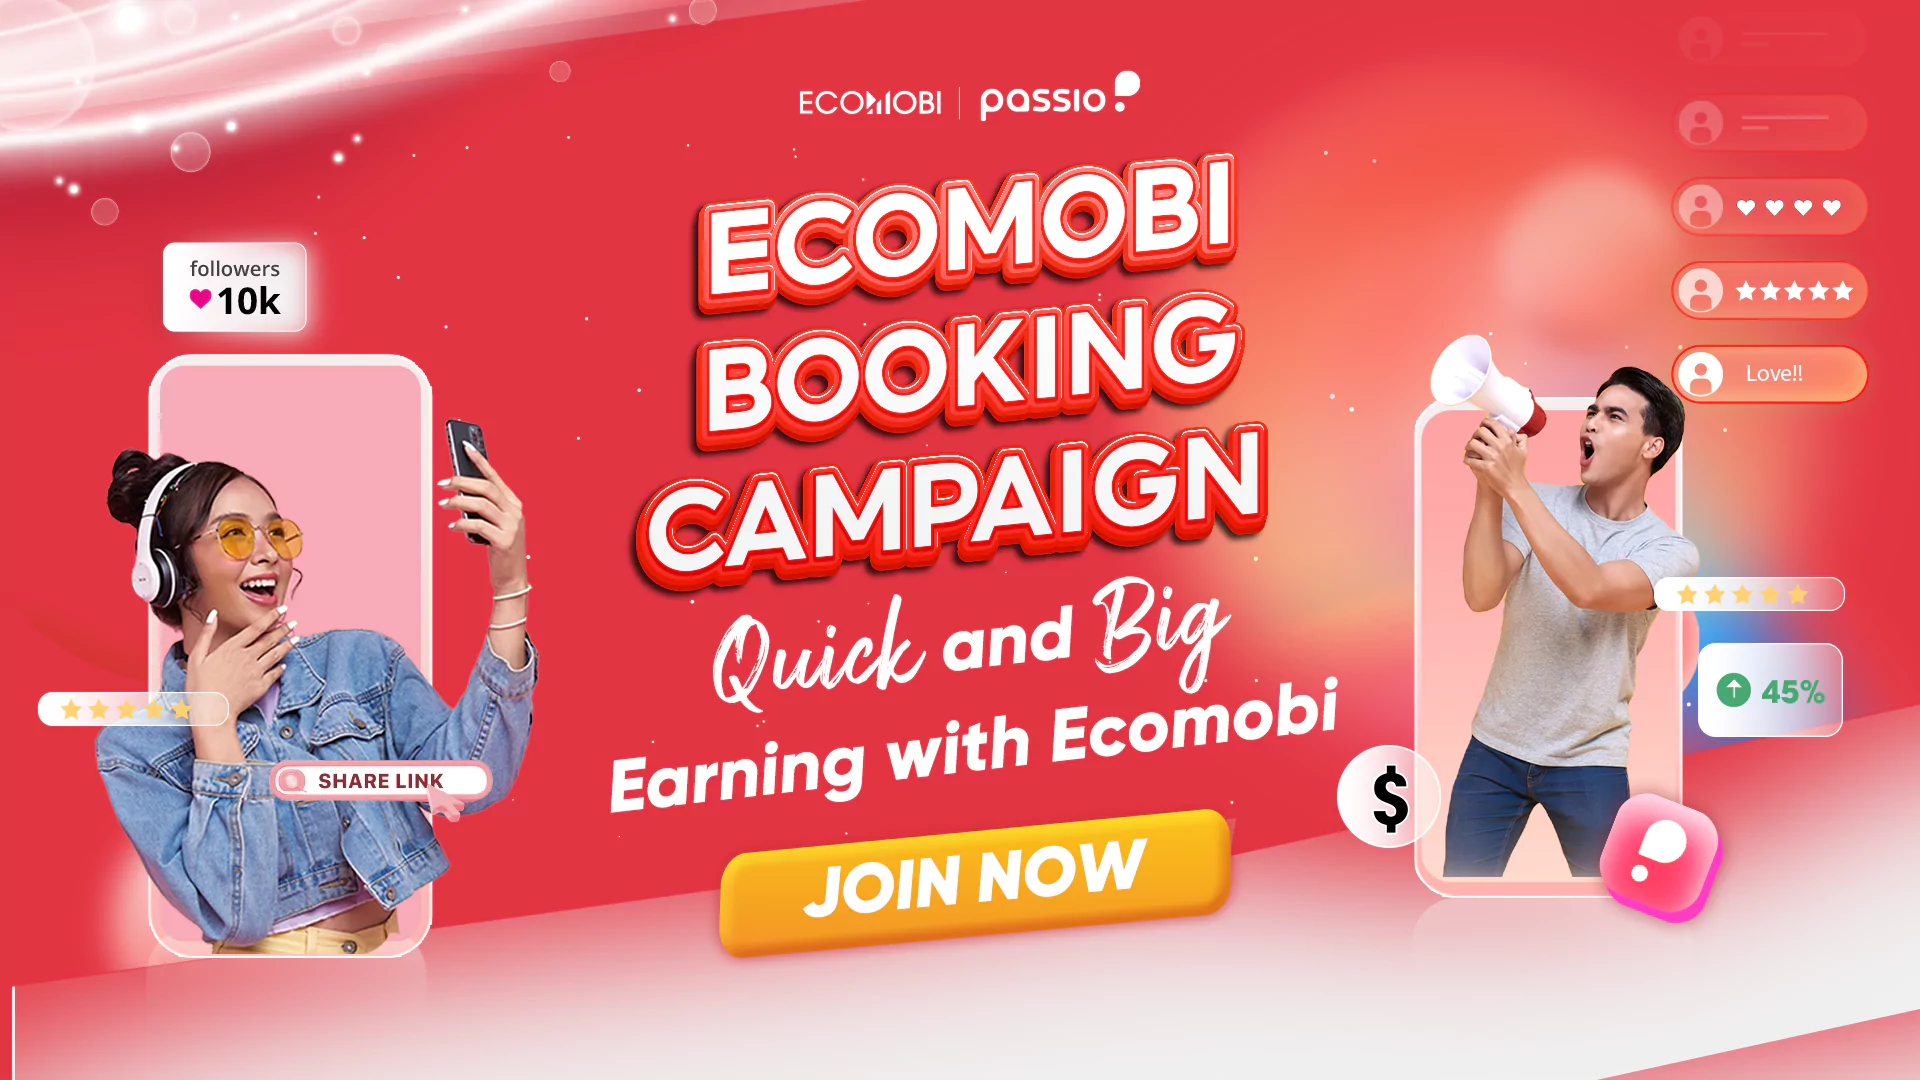 Ecomobi booking campaign